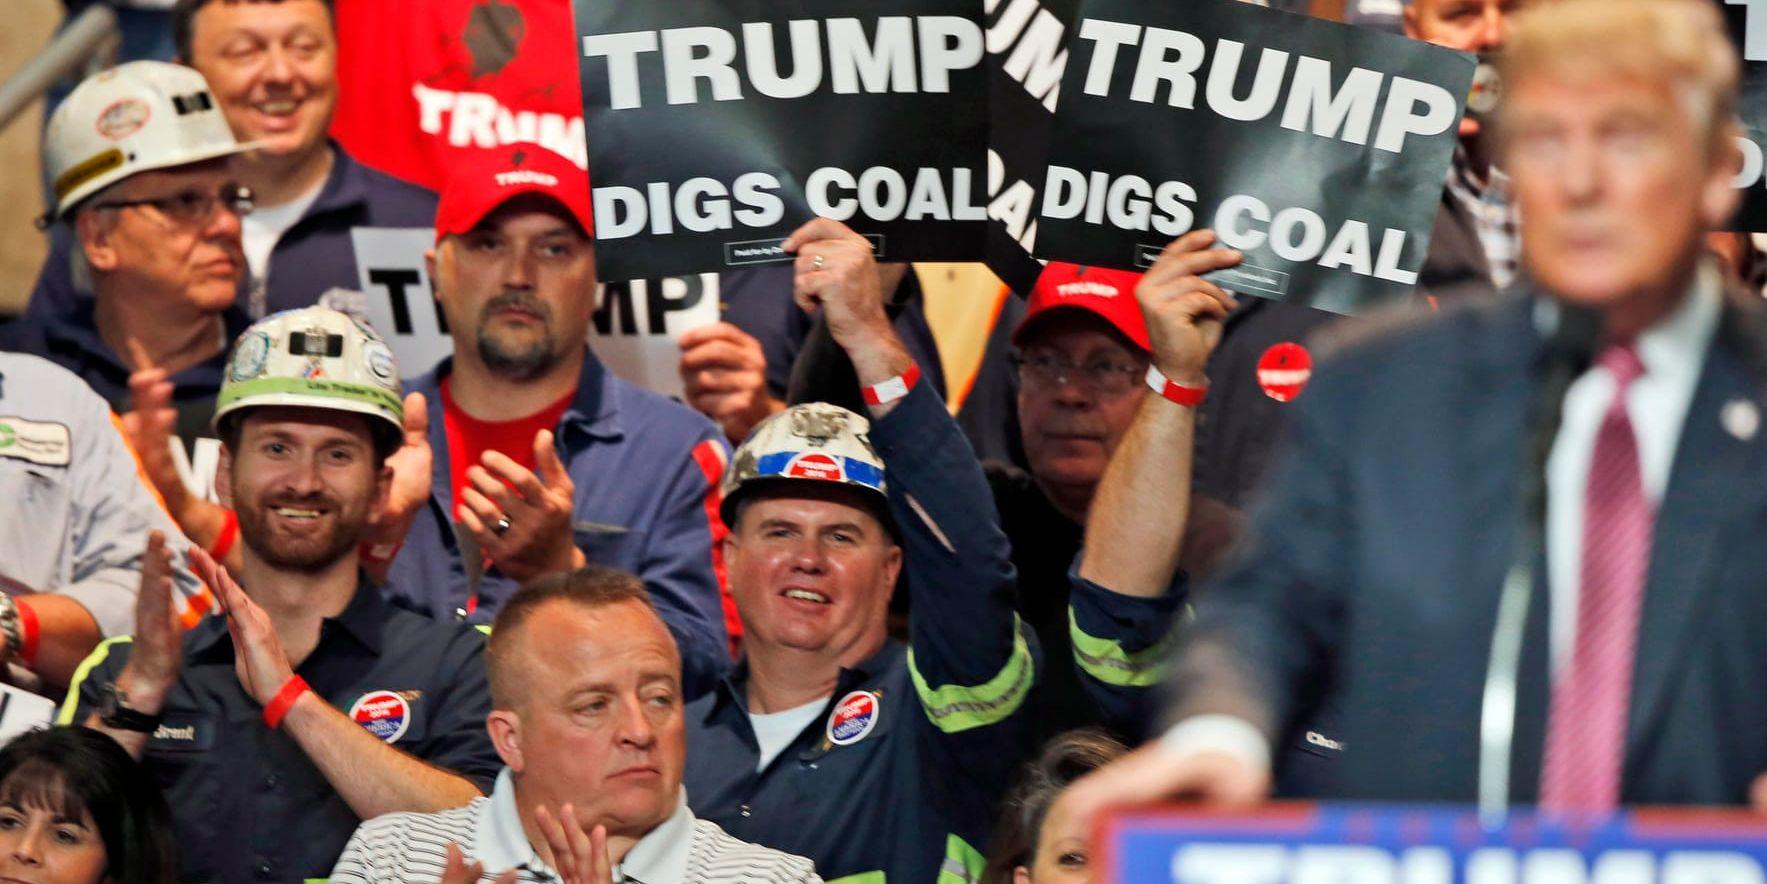 Kolgruvearbetare viftar med plakat under ett tal av Donald Trump i valrörelsen 2016. Presidenten har ofta lovordat kolenergin, trots att den orsakar mer utsläpp än andra kraftslag. Arkivbild.